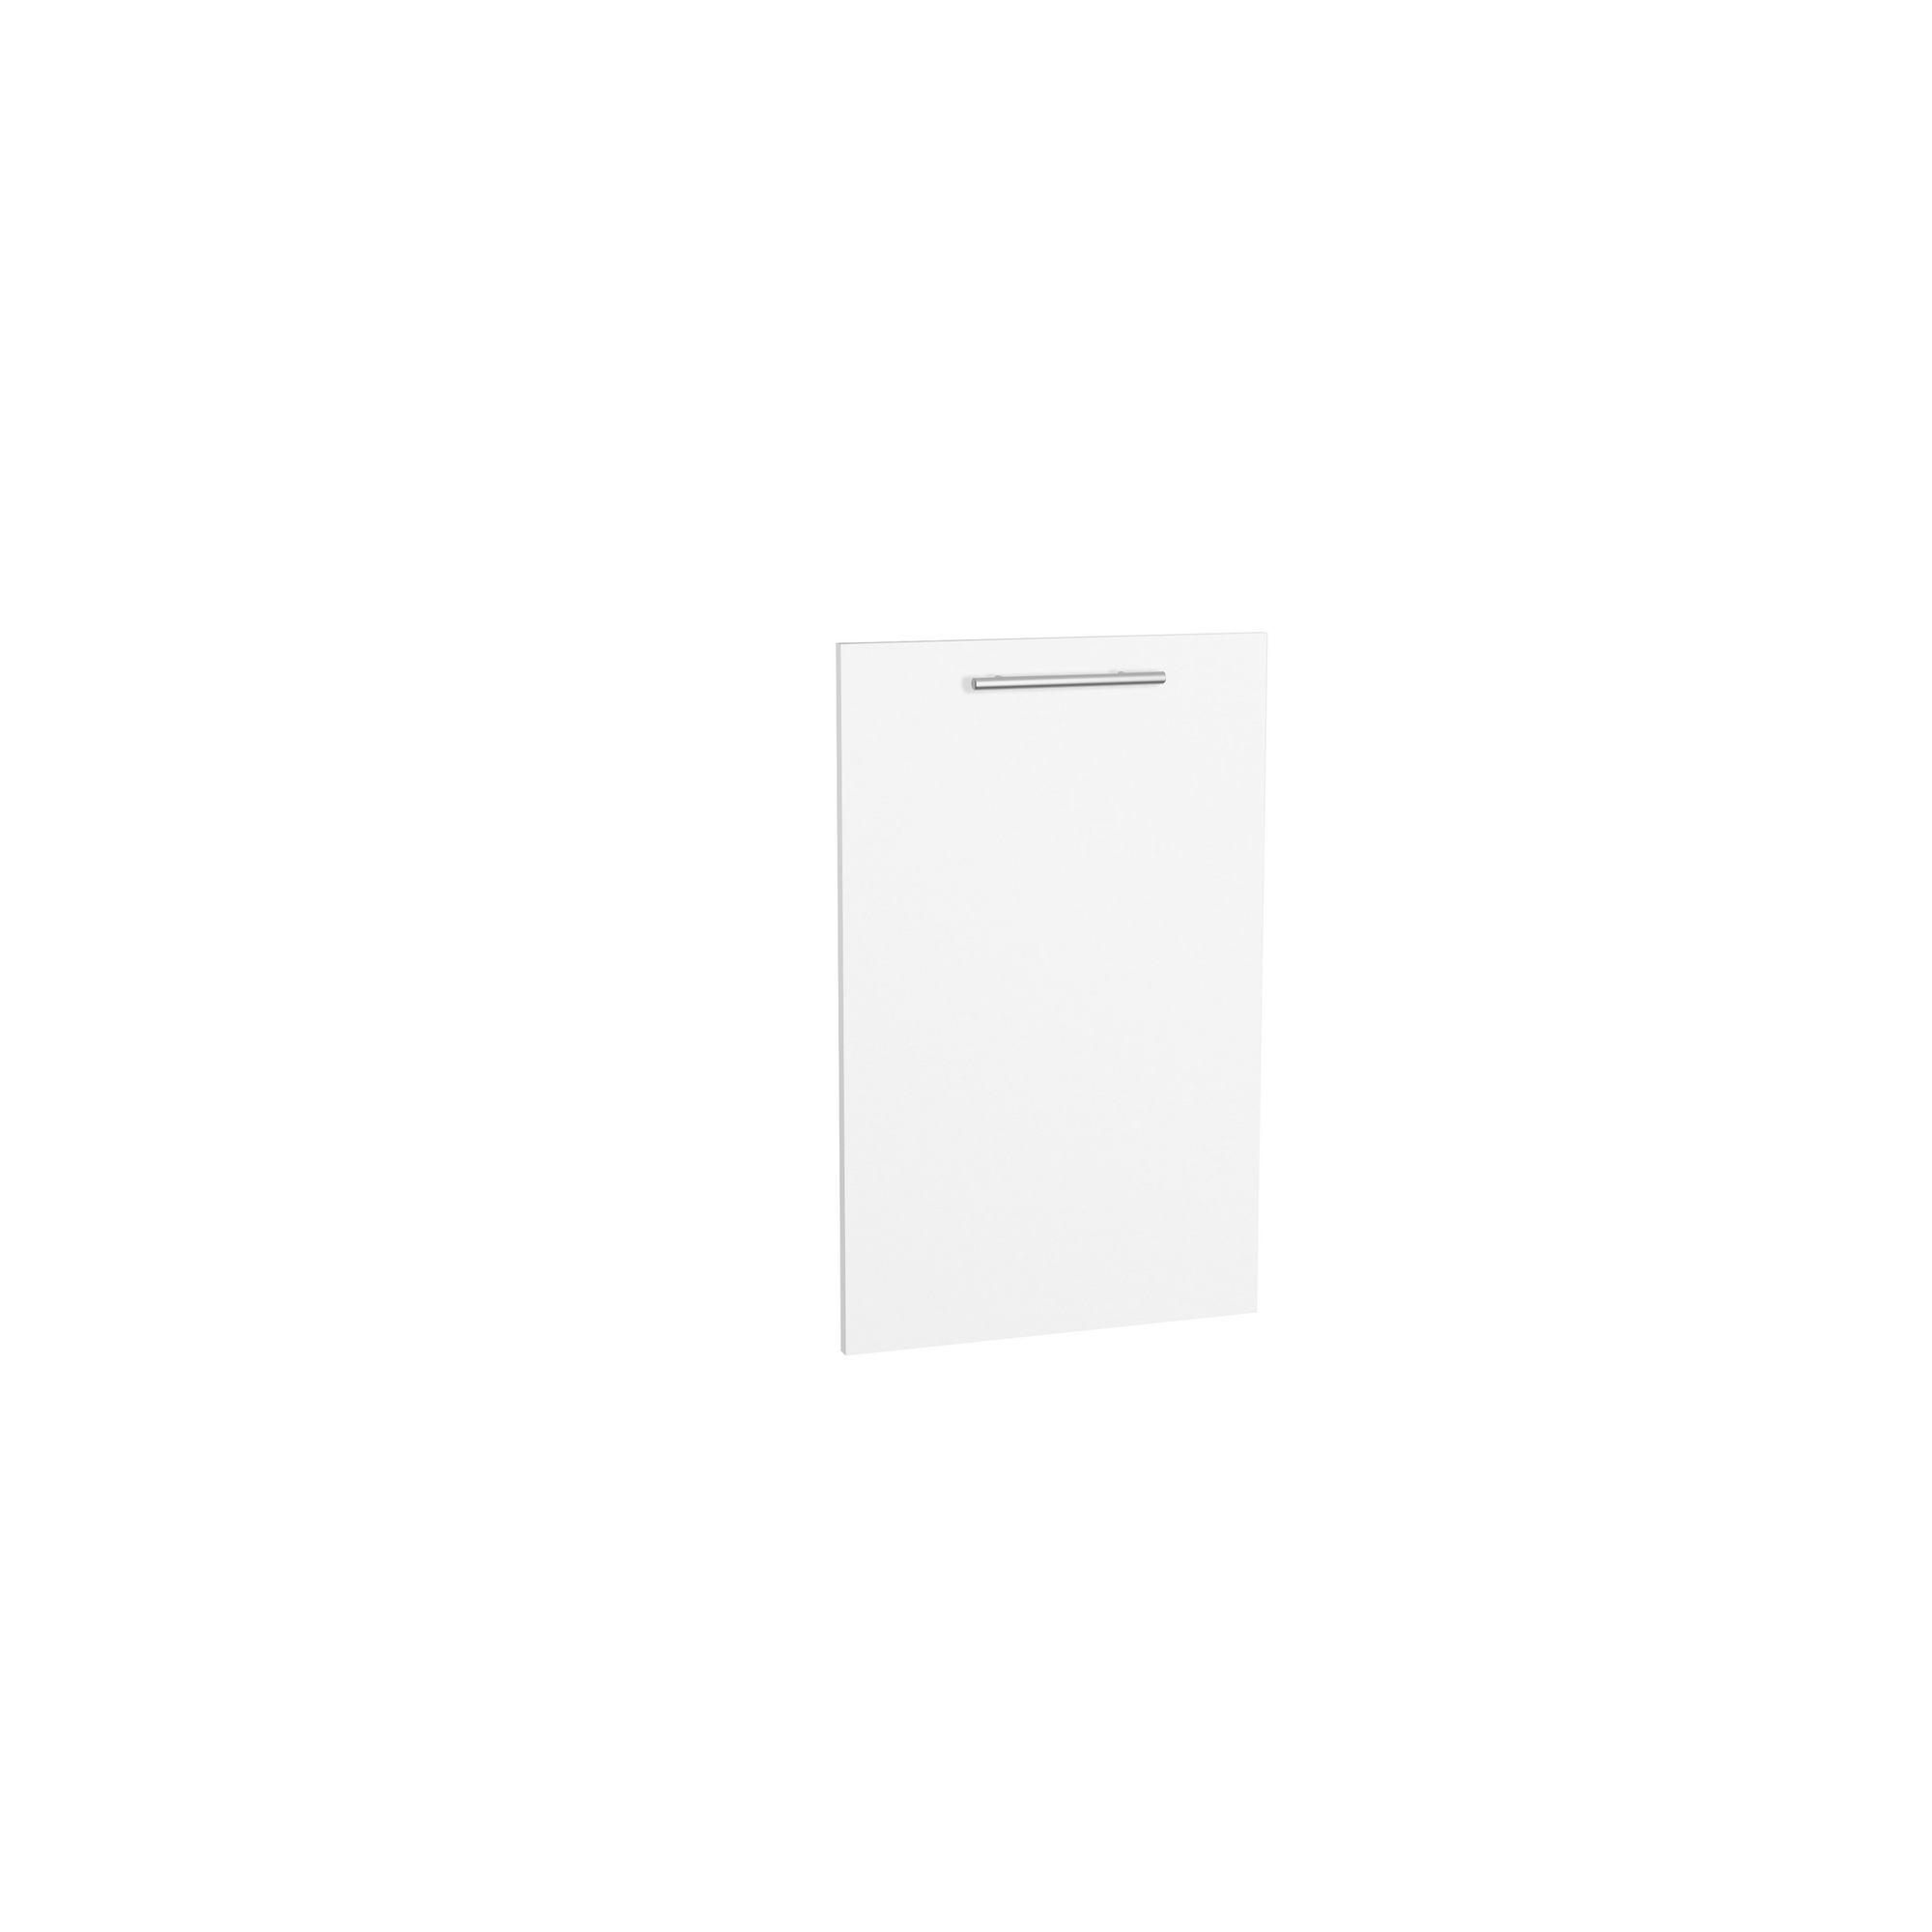 Tür für vollintegrierten Geschirrspüler 'Optikomfort Bengt932' weiß 44,6 x 70 x 1,6 cm + product picture